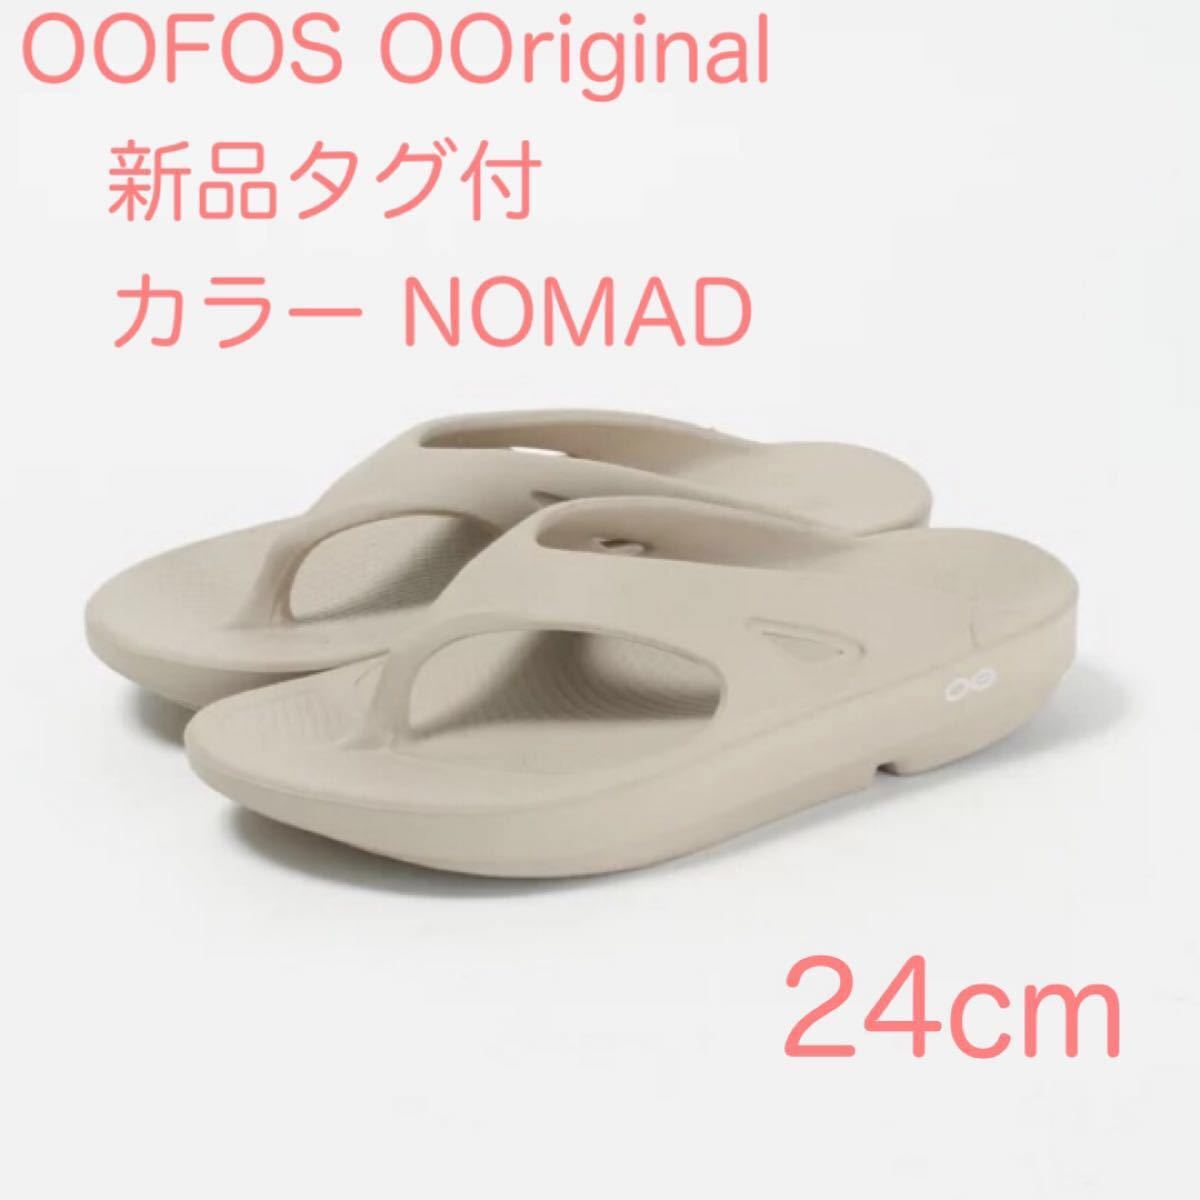 オリジナル Oofos Ooriginal Nomad Beige 24cm 24.0cm | yasnabeauty.com